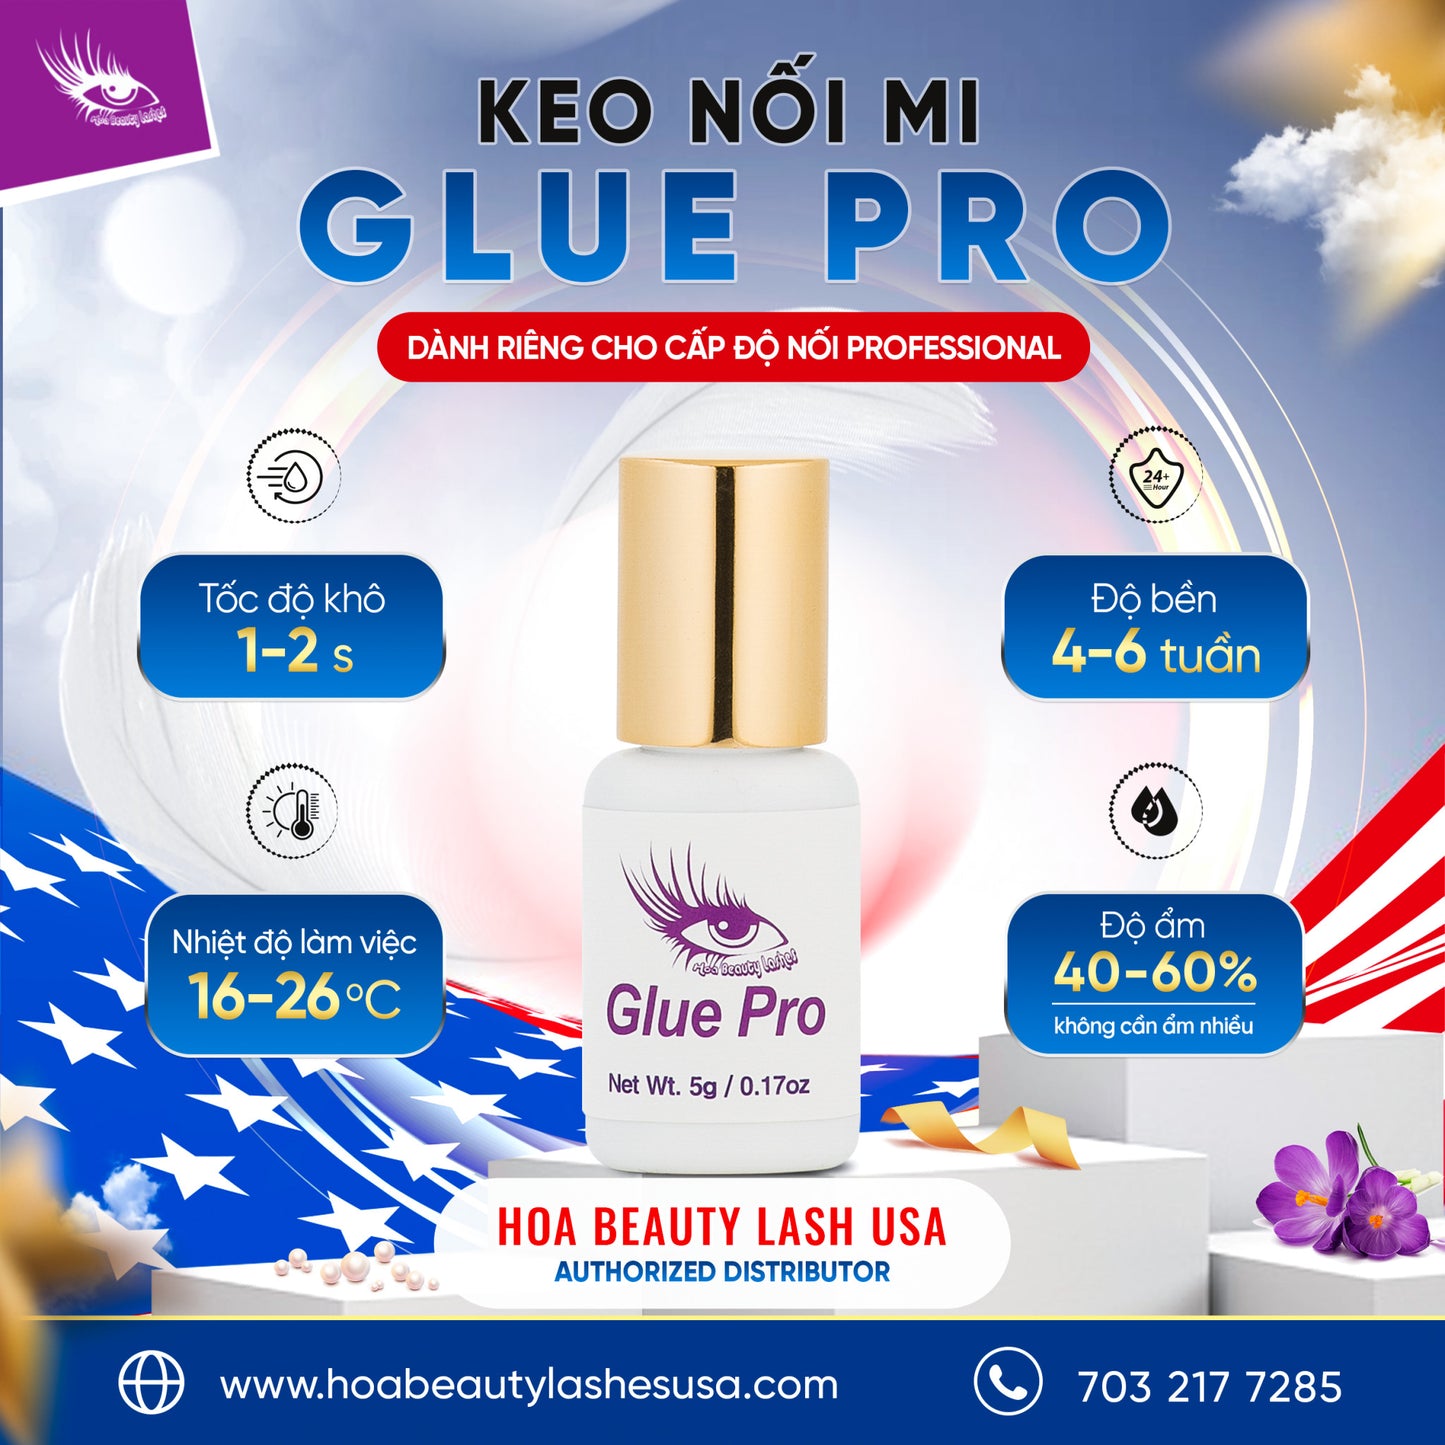 Glue Pro